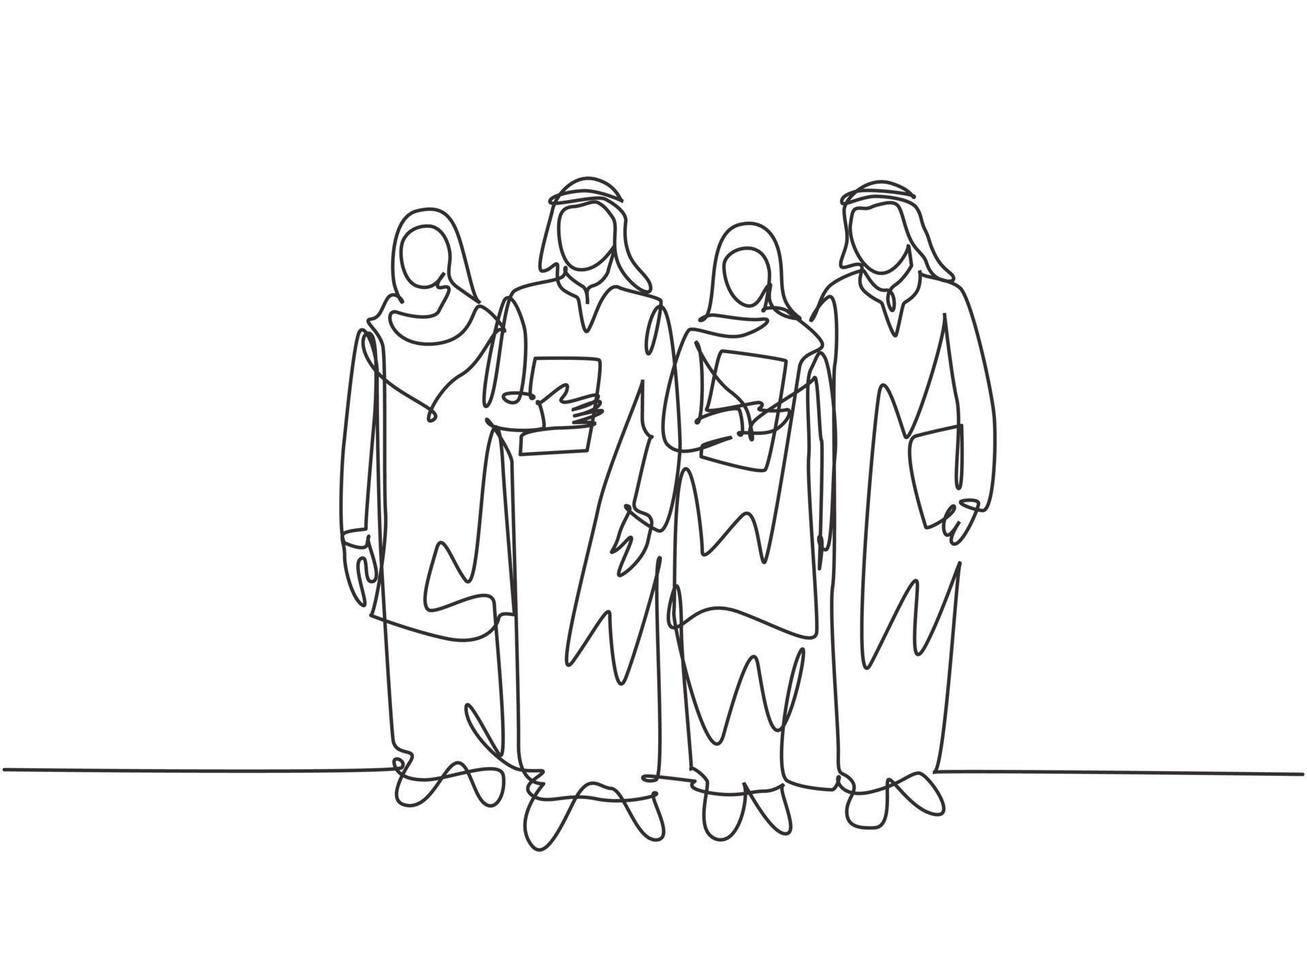 een doorlopende lijntekening van jonge gelukkige moslimarbeiders die samen lopen in het kantoorgebouw. islamitische kleding shemag, kandura, keffiyeh, hijab. enkele lijn tekenen ontwerp vectorillustratie vector